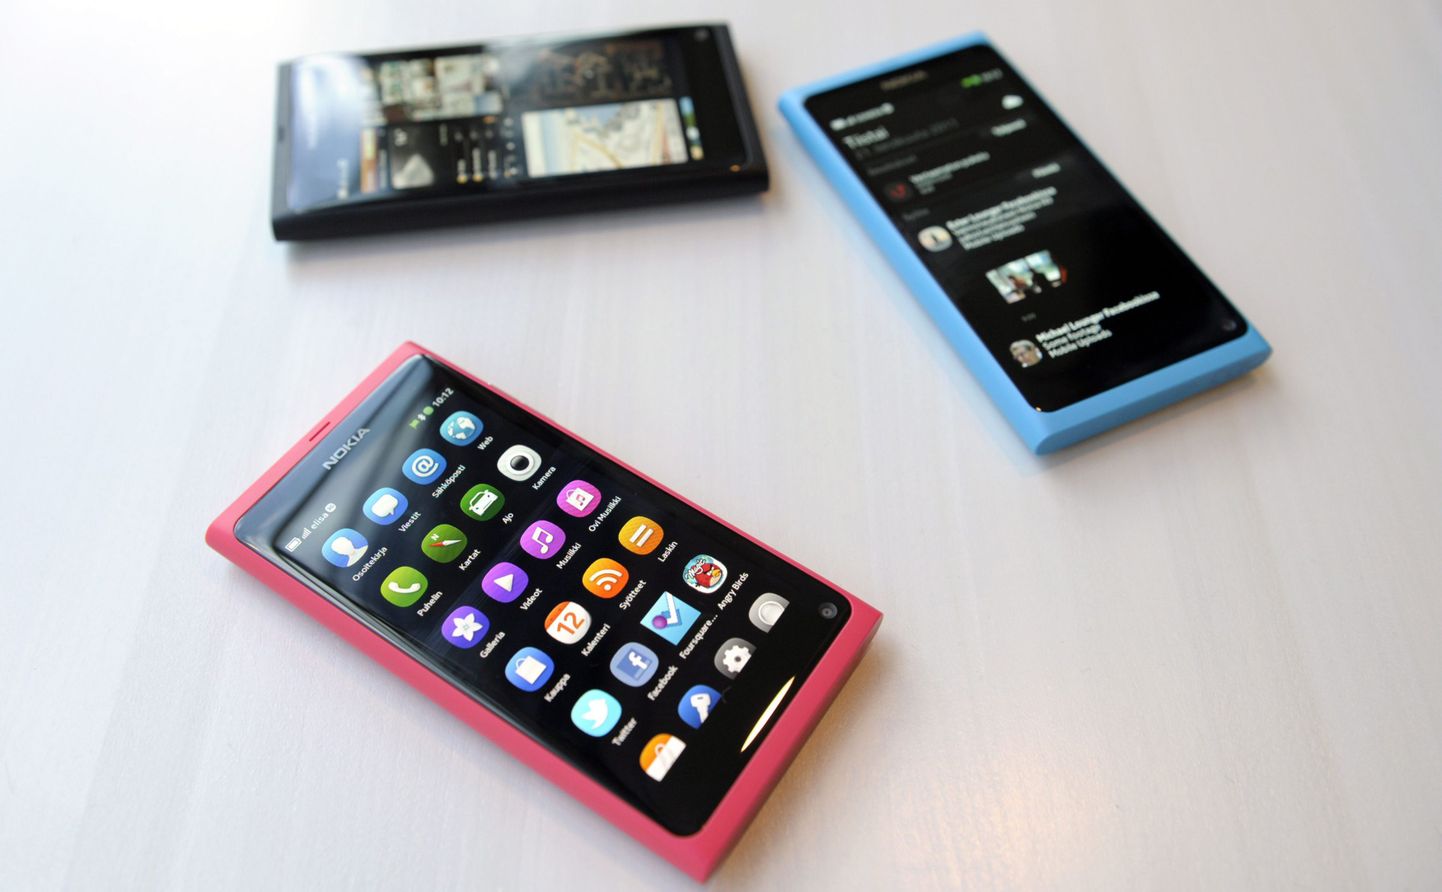 Nokia uued N9 nutitelefonid.